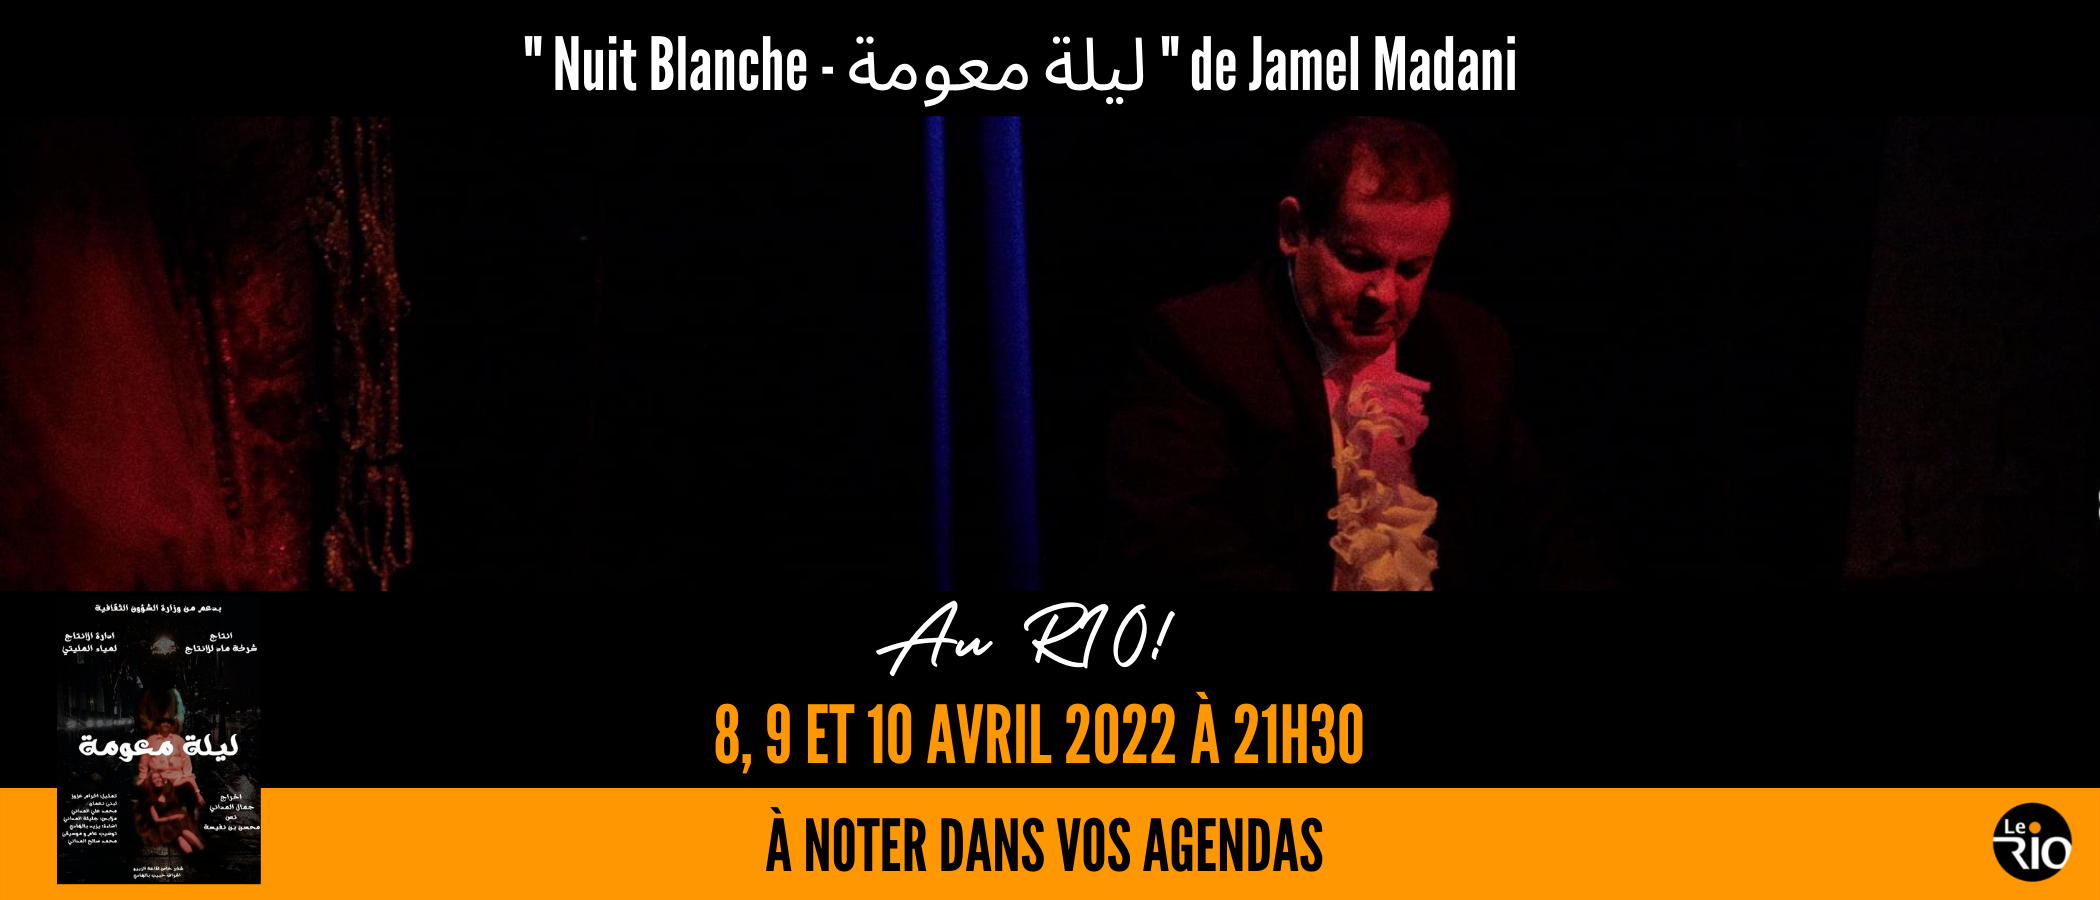 Nuit Blanche  ليلة معومة de Jamel Madani